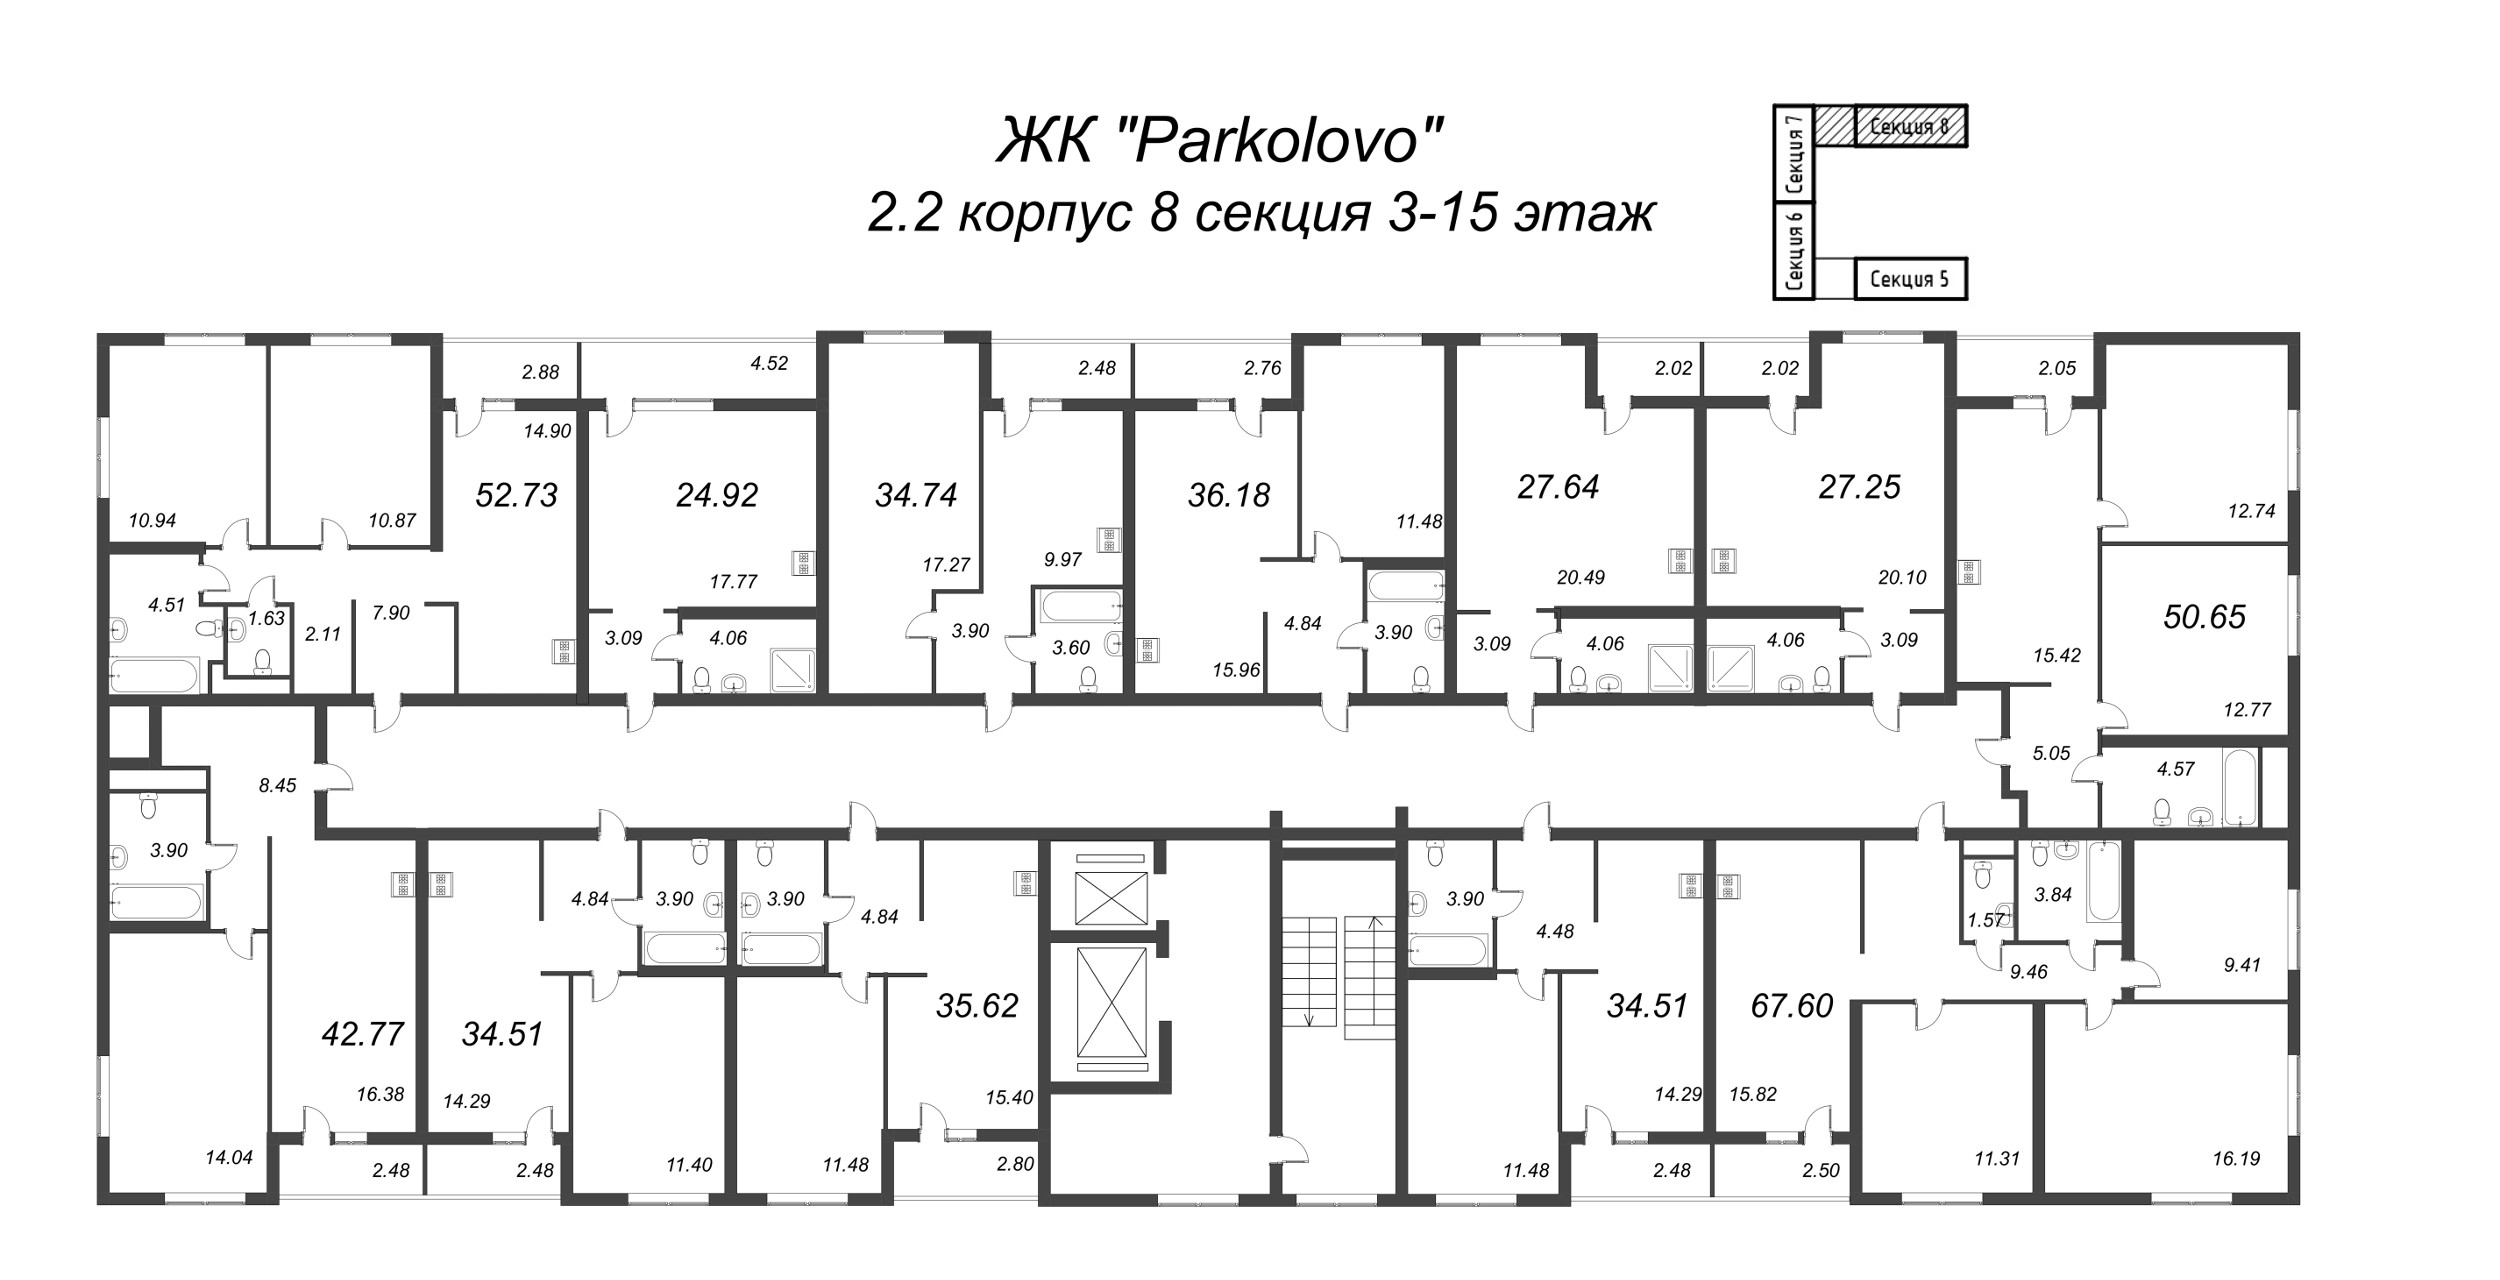 2-комнатная (Евро) квартира, 42.77 м² в ЖК "Parkolovo" - планировка этажа